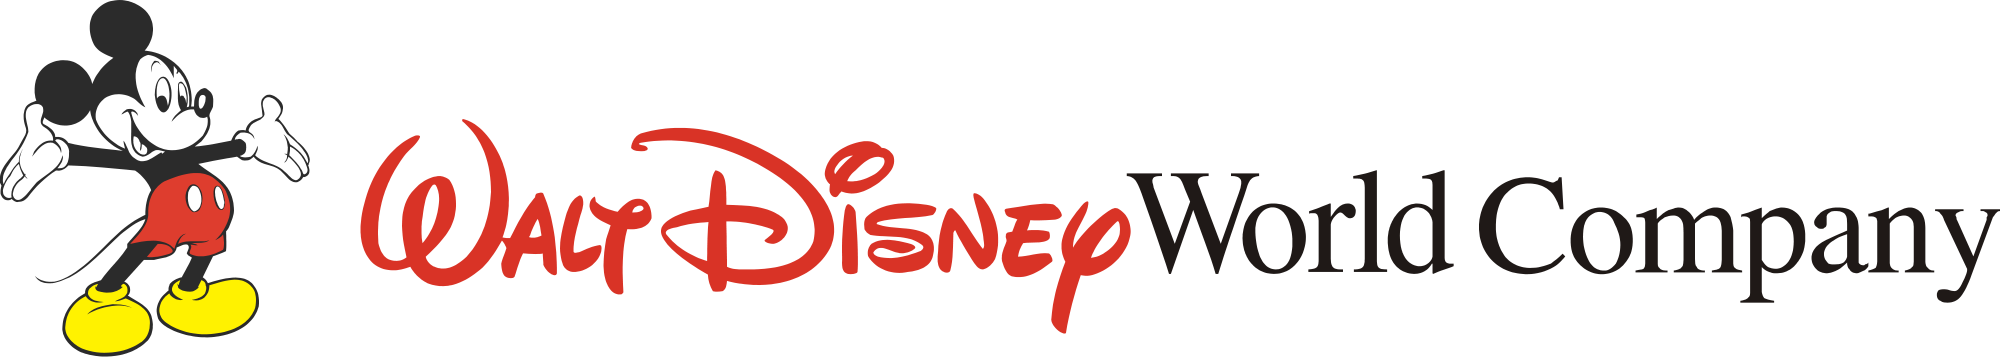 Download Image - 2000px-Walt Disney World Company logo.svg.png ...